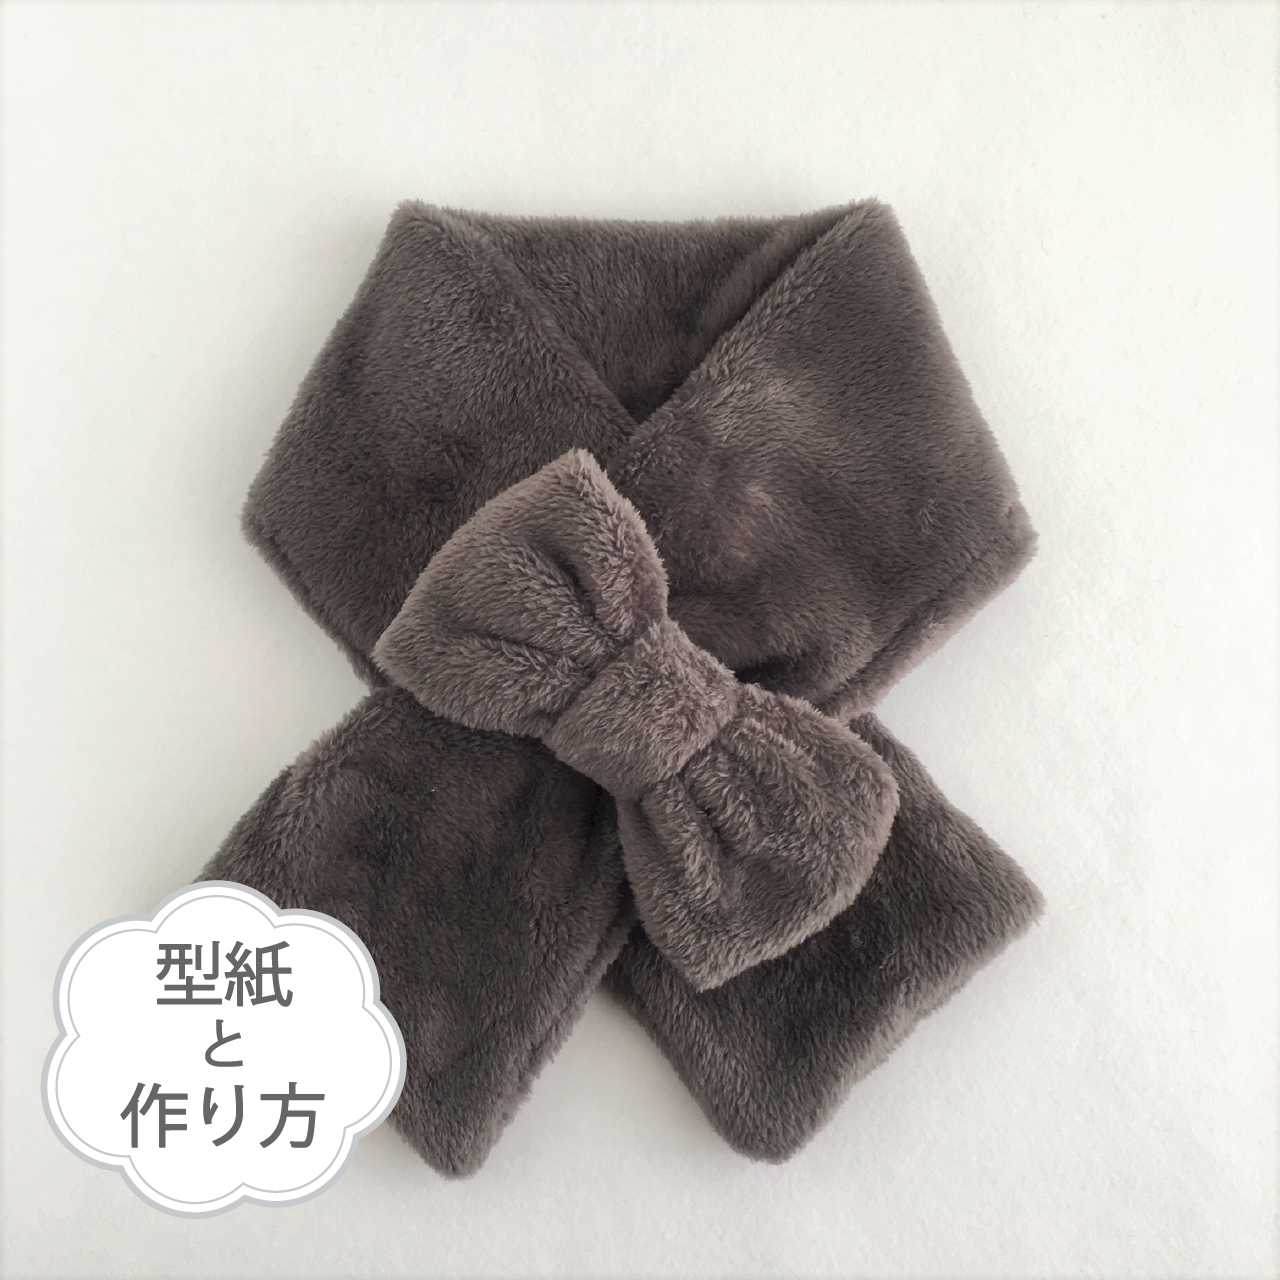 リボンマフラー 型紙と作り方のセット Kiｰacｰ1811 子供服の型紙ショップ Tsukuro ツクロ